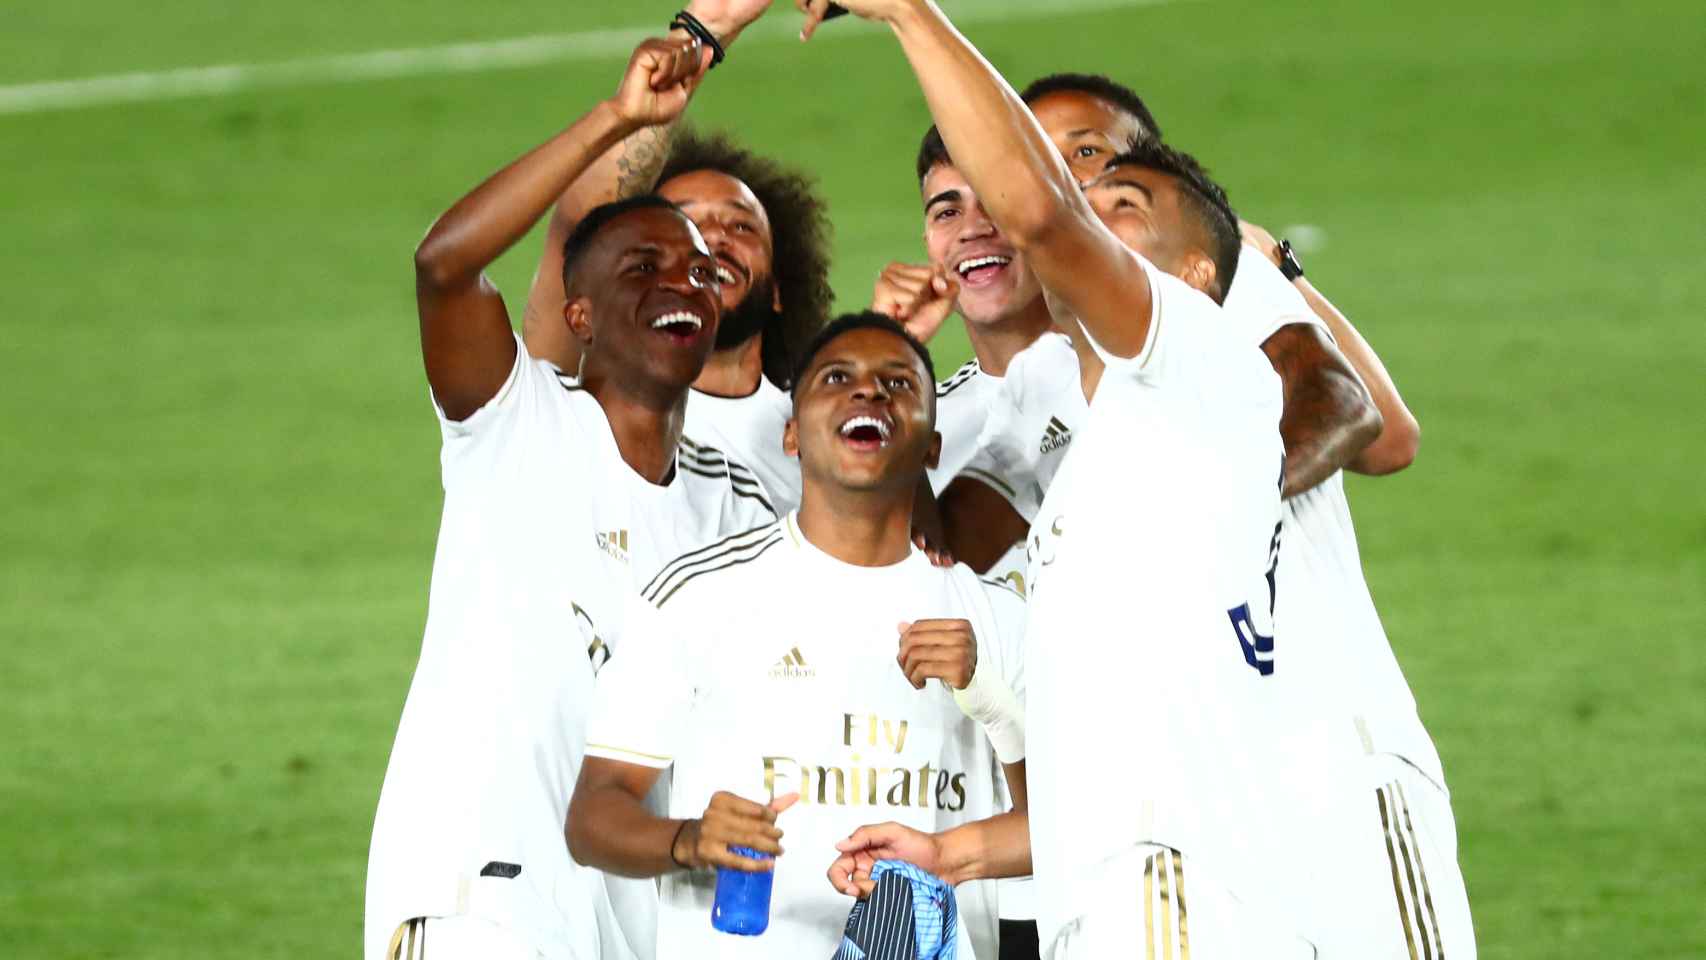 Los jugadores brasileños del Real Madrid se fotografían durante la celebración por el título